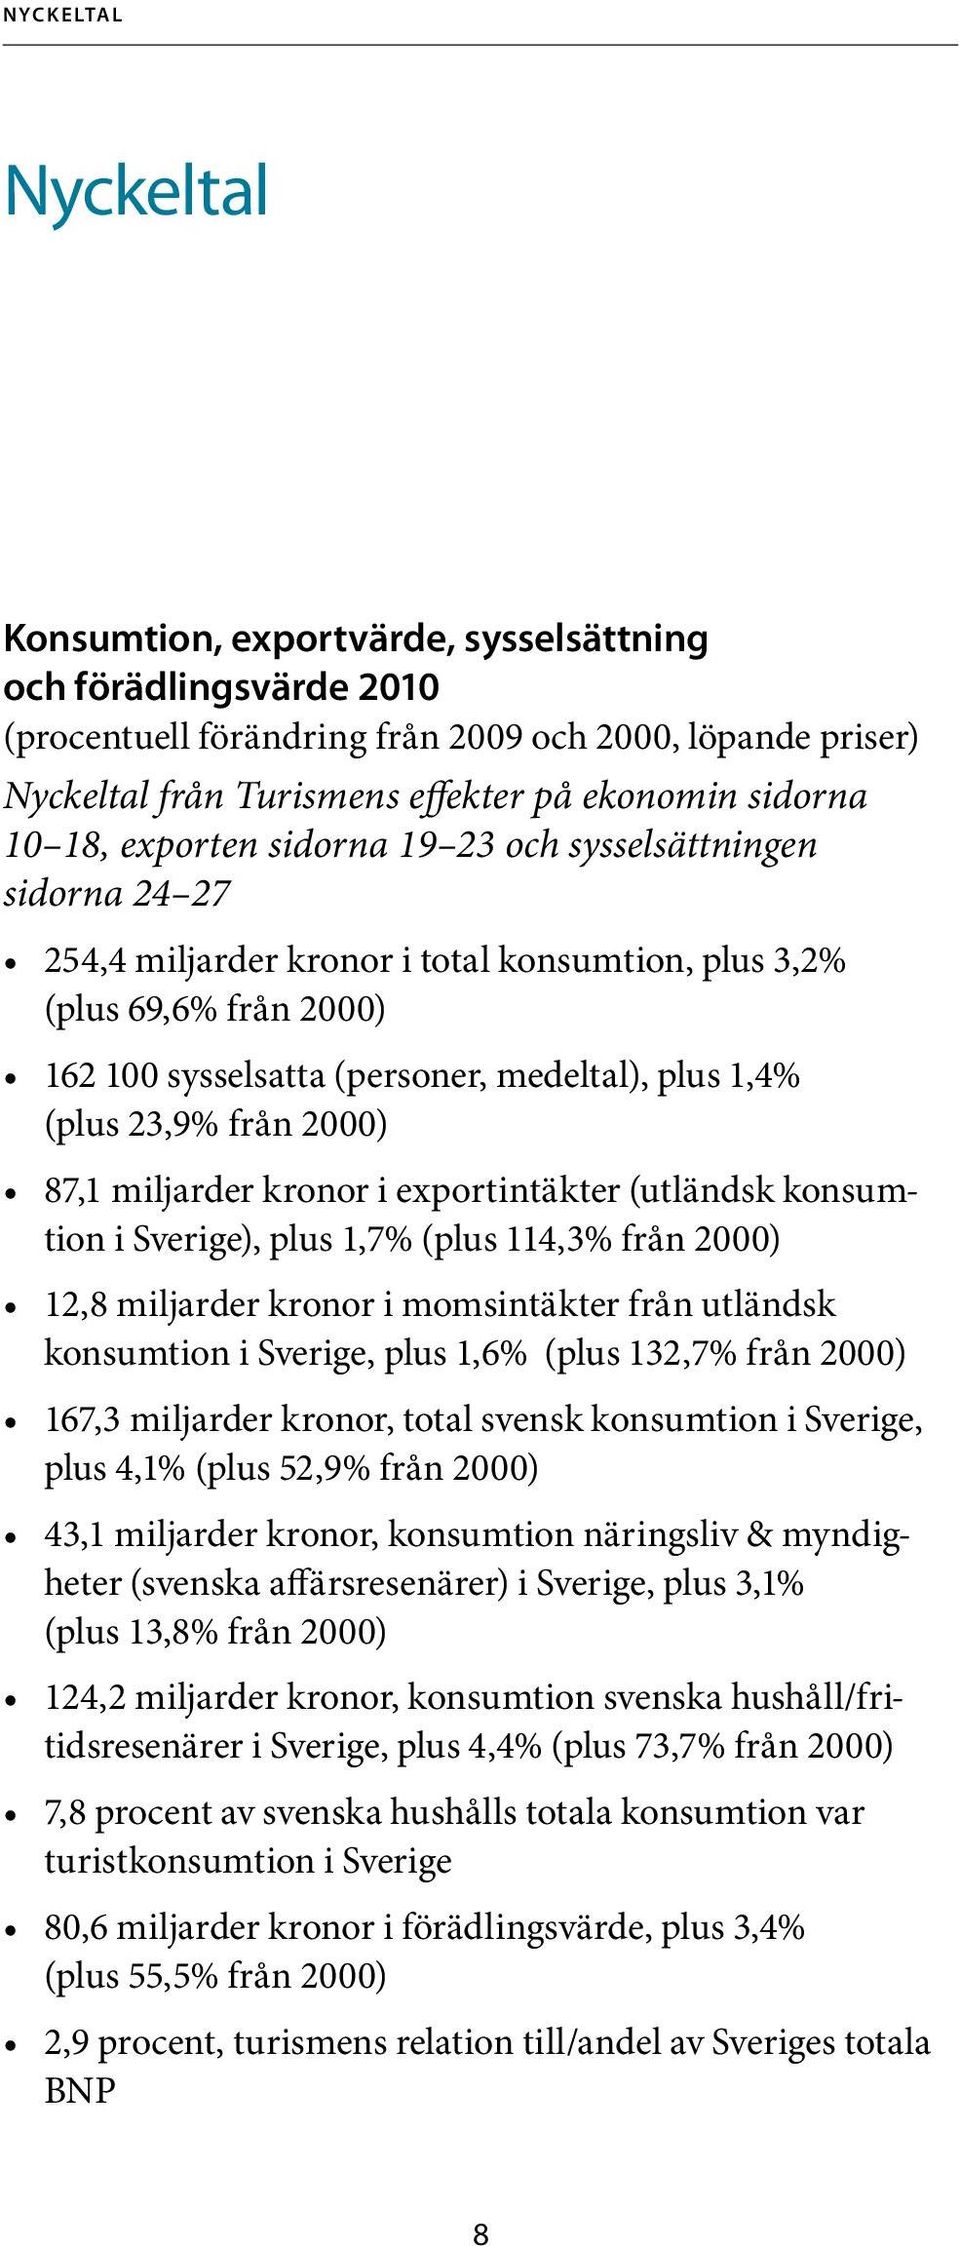 1,4% (plus 23,9% från 2000) 87,1 miljarder kronor i exportintäkter (utländsk konsumtion i Sverige), plus 1,7% (plus 114,3% från 2000) 12,8 miljarder kronor i momsintäkter från utländsk konsumtion i